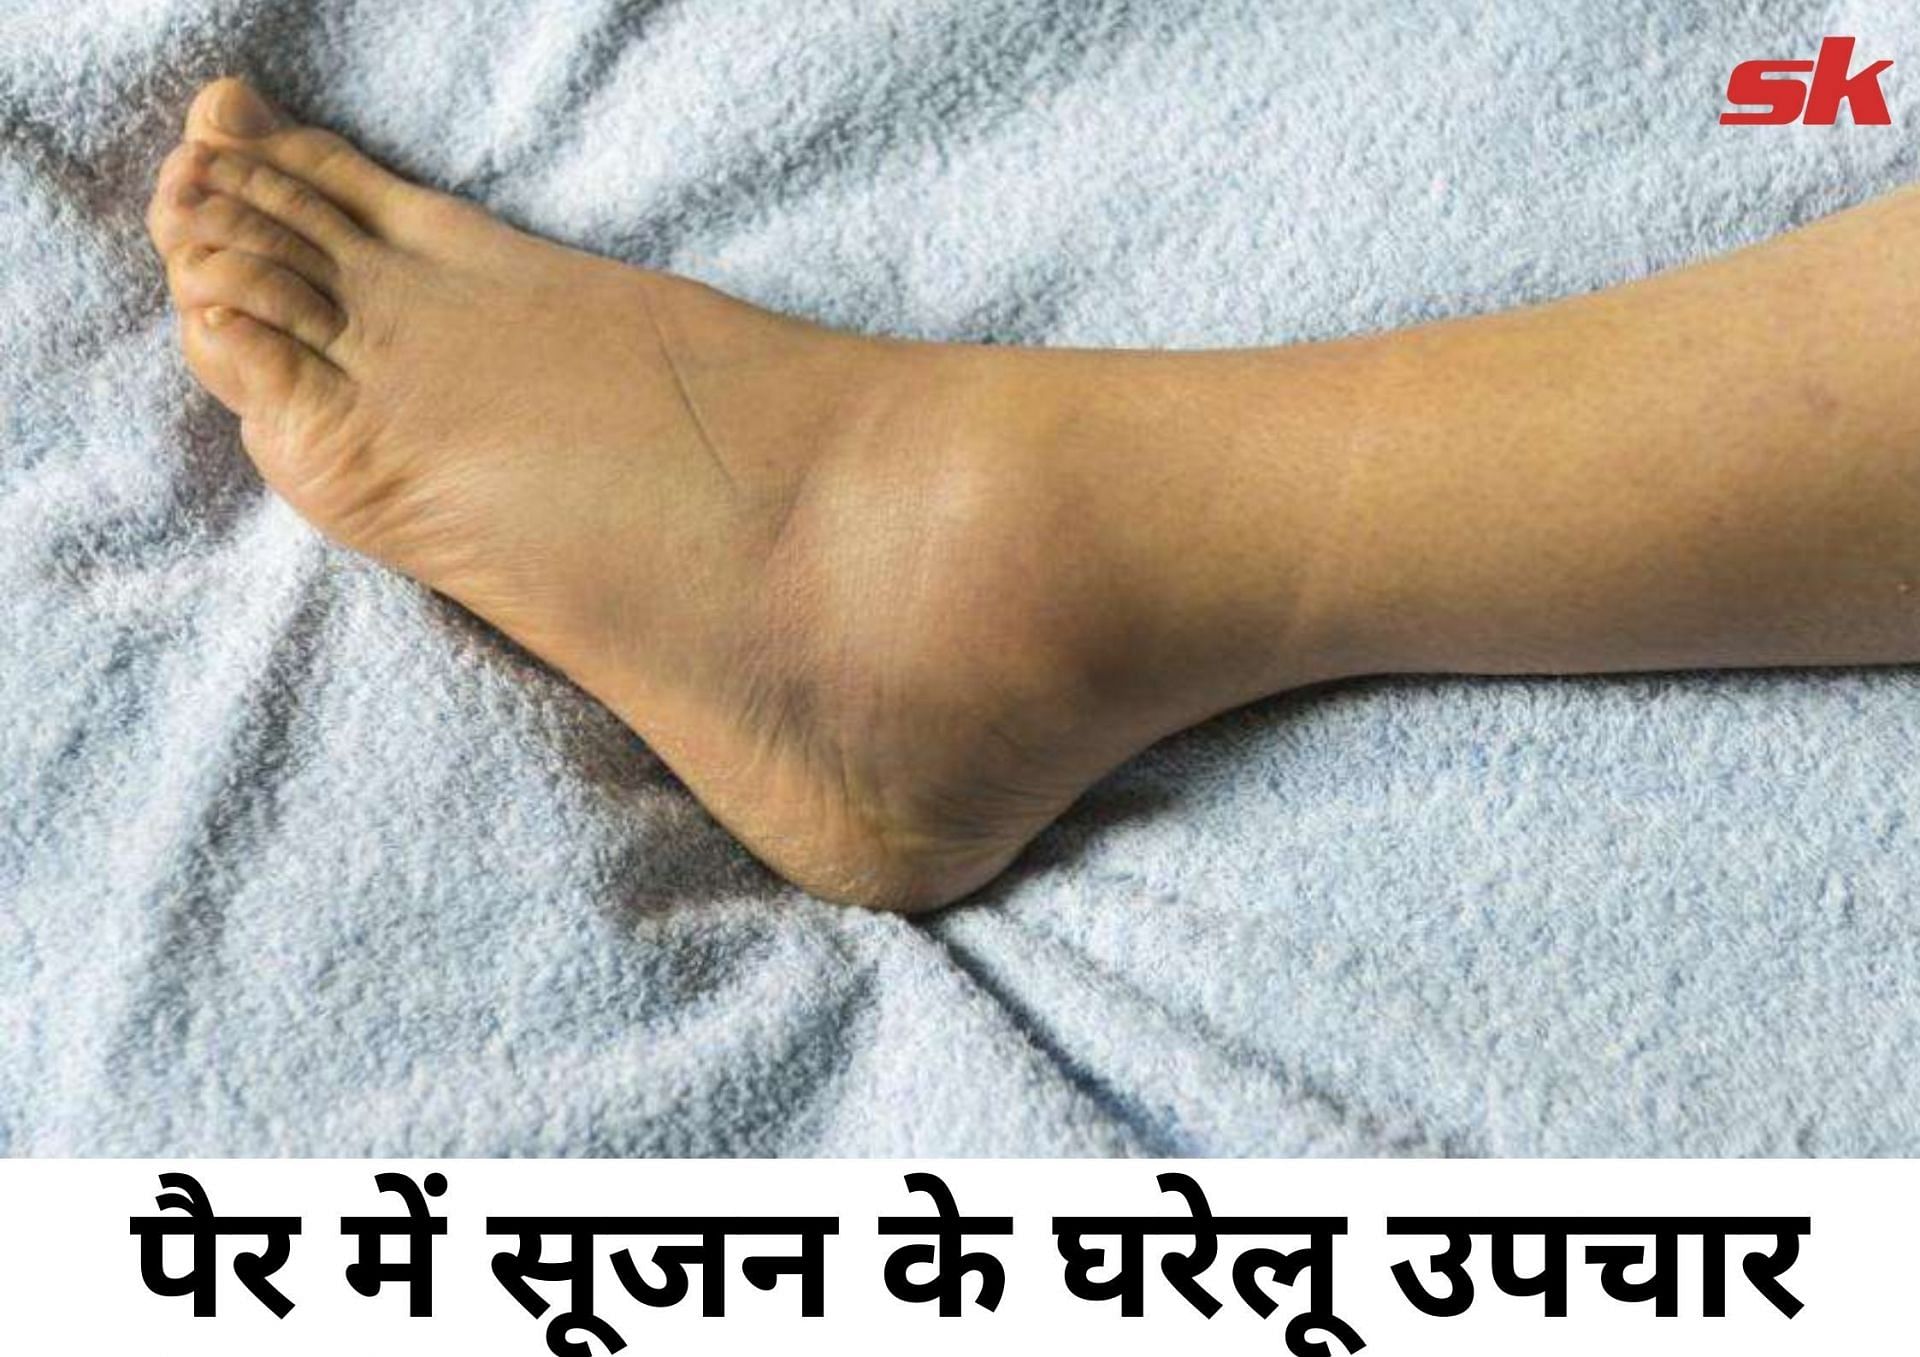 पैर में सूजन के घरेलू उपचार (फोटो - sportskeeda हिन्दी)